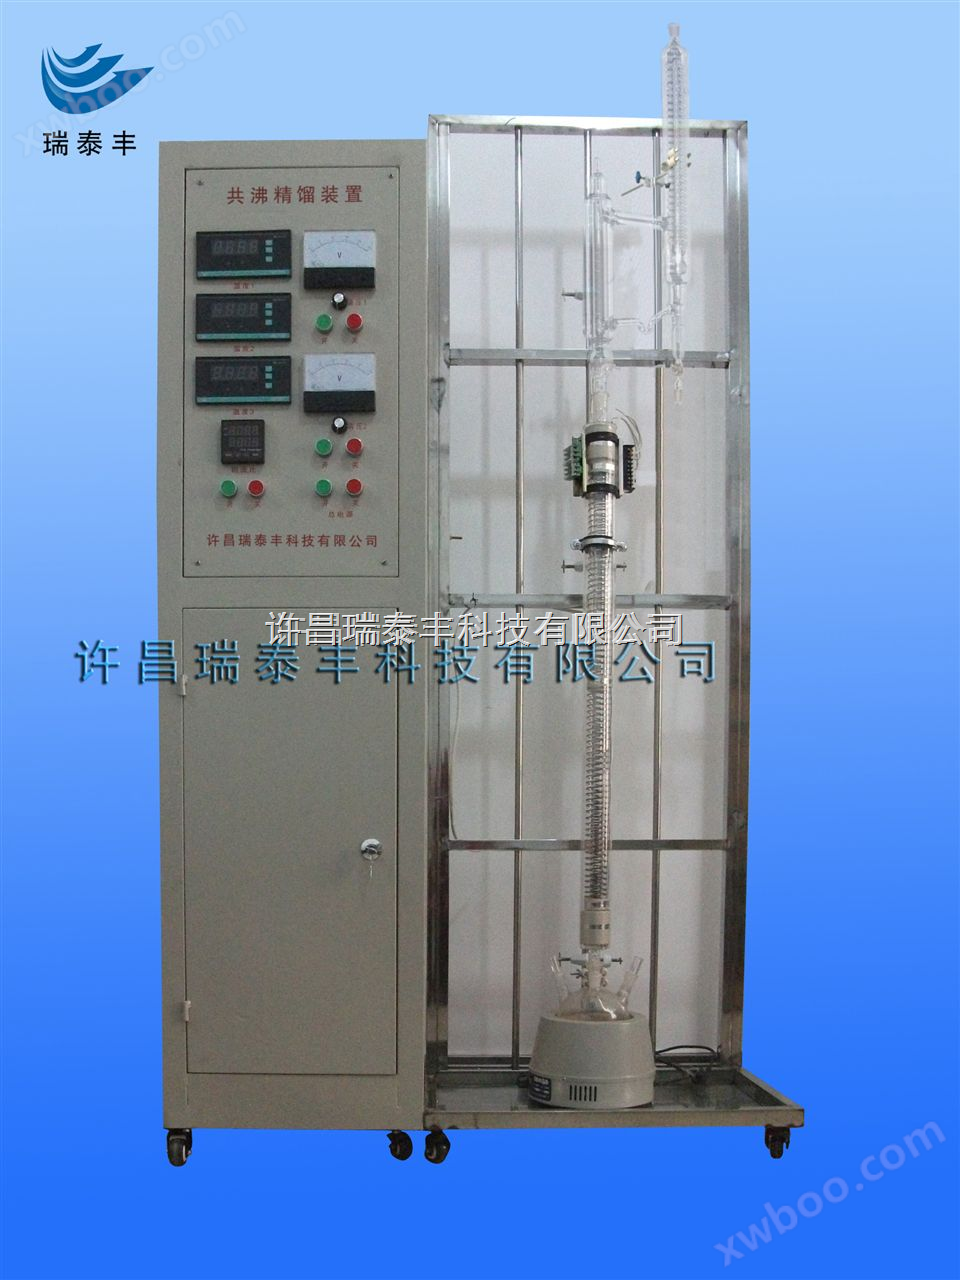 共沸精馏实验装置（图），共沸精馏实验流程图，恒沸精馏装置的构造